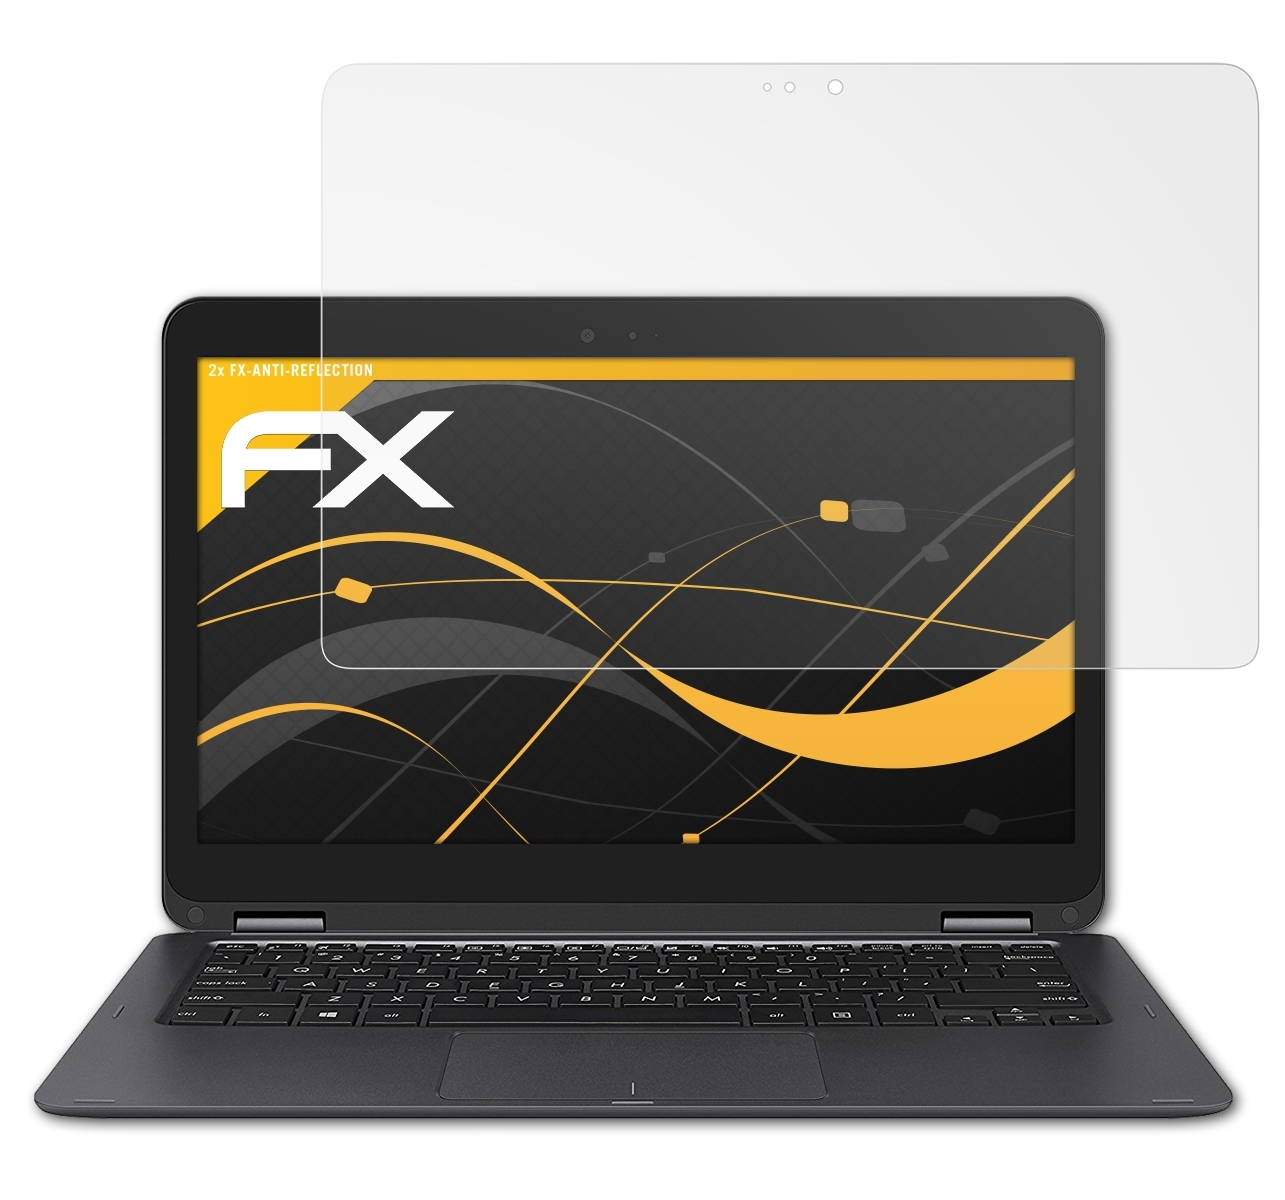 ATFOLIX 2x FX-Antireflex Displayschutz(für Flip (UX360UA)) Asus ZenBook